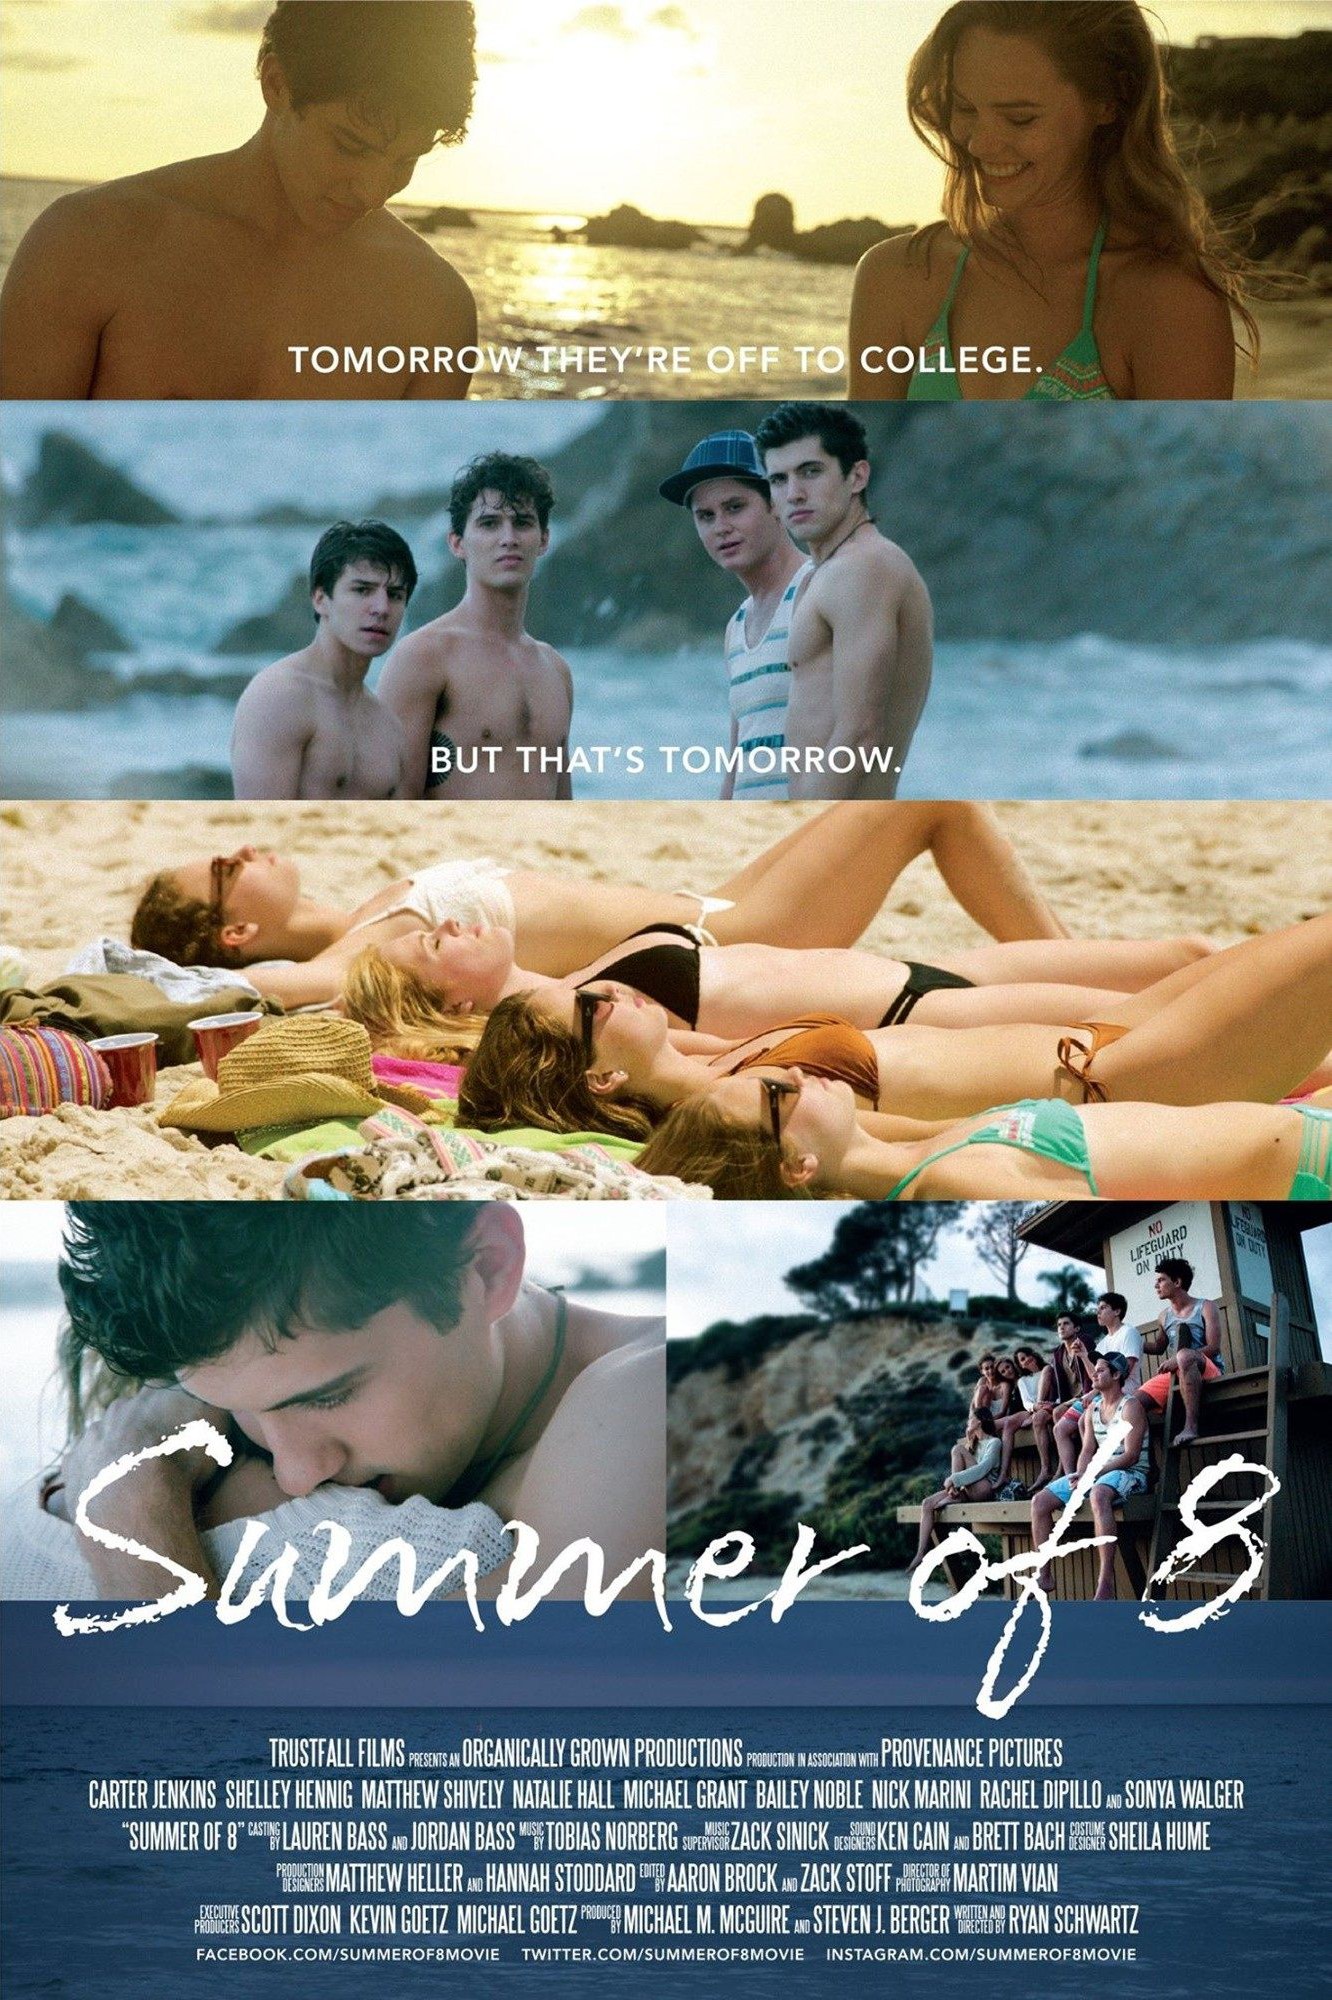 Poster of TrustFall Films' Summer of 8 (2016)